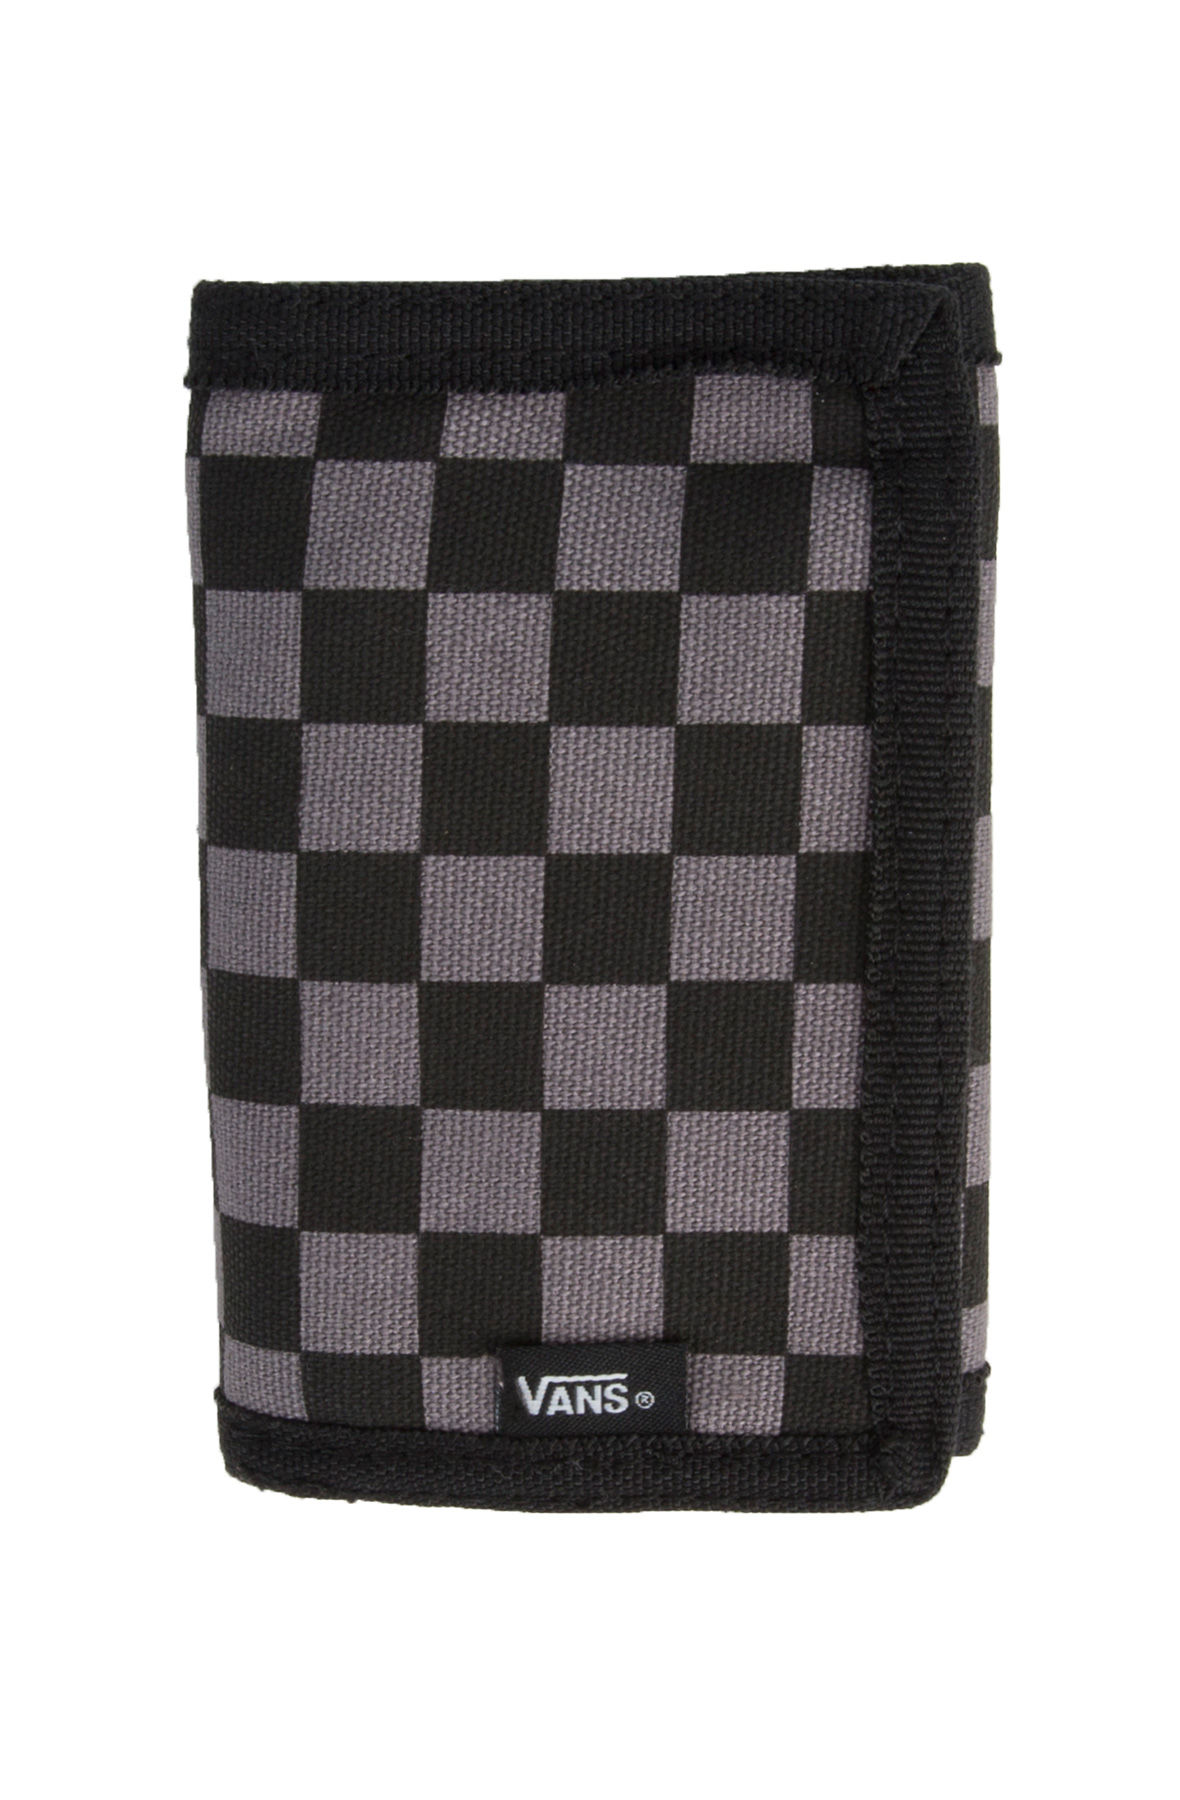 Buy Vans Black and Gunmetal Grey Men's Wallet (VN000EJAK0J) at